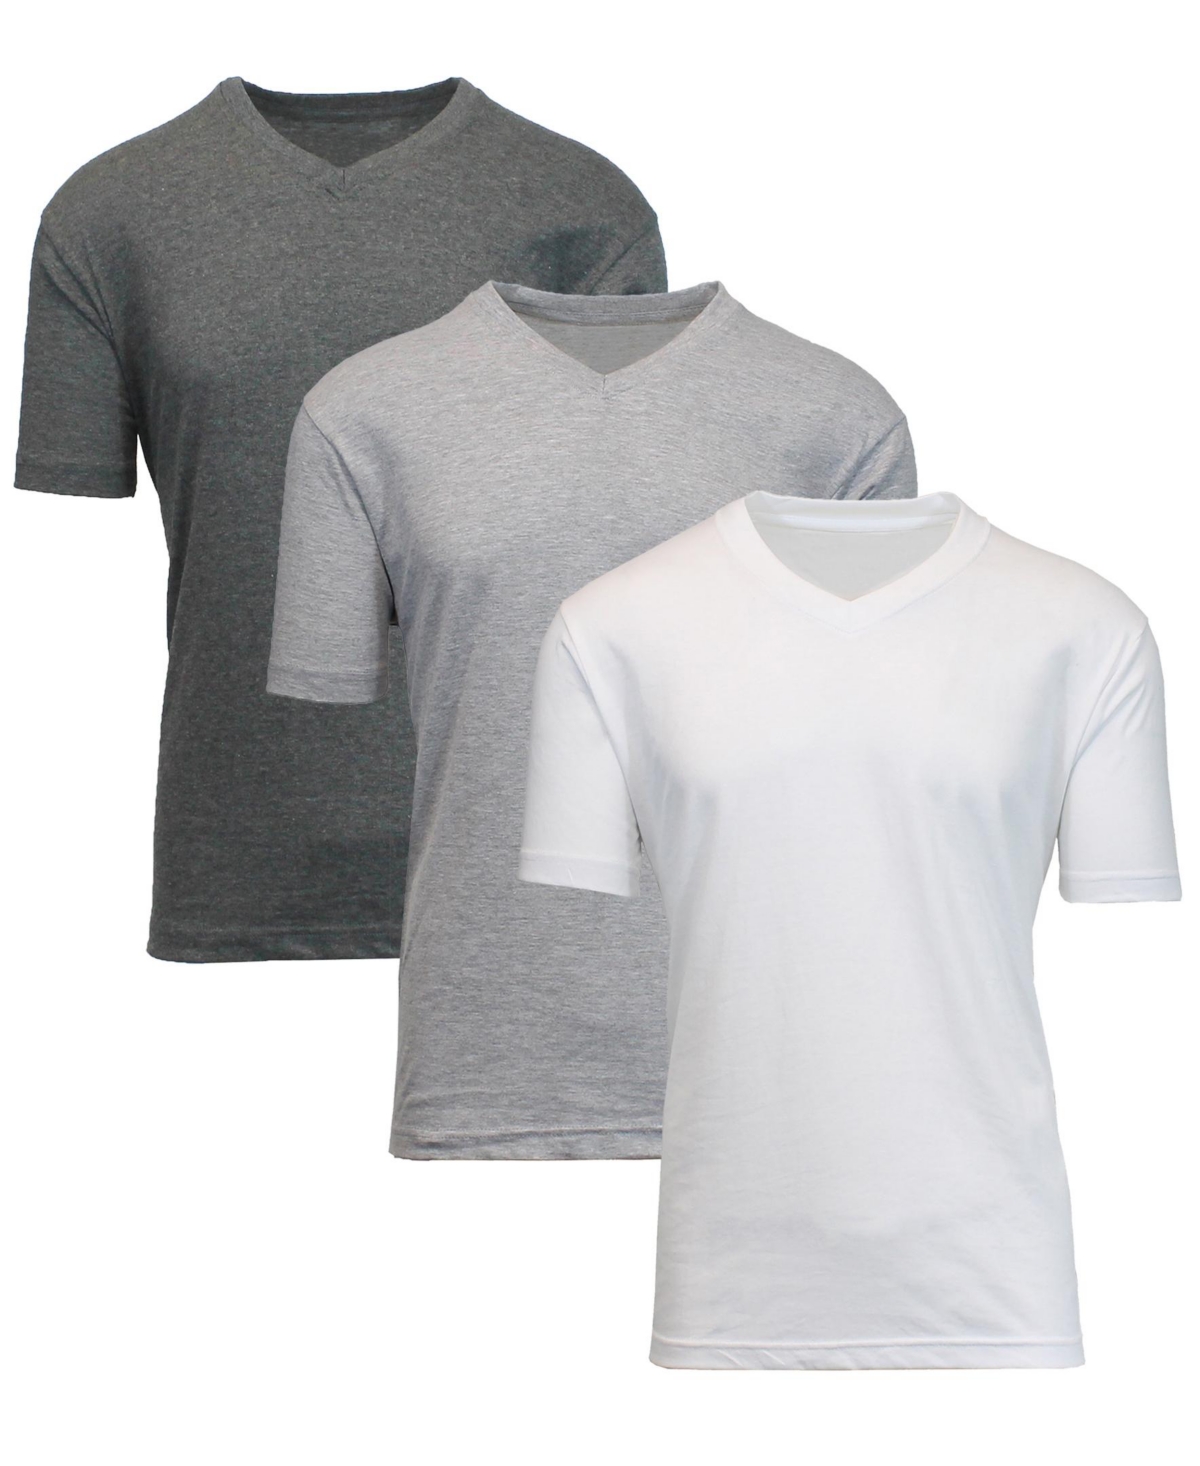 Men's Short Sleeve V-Neck T-shirt, Pack of 3 - Navy-Royal-White